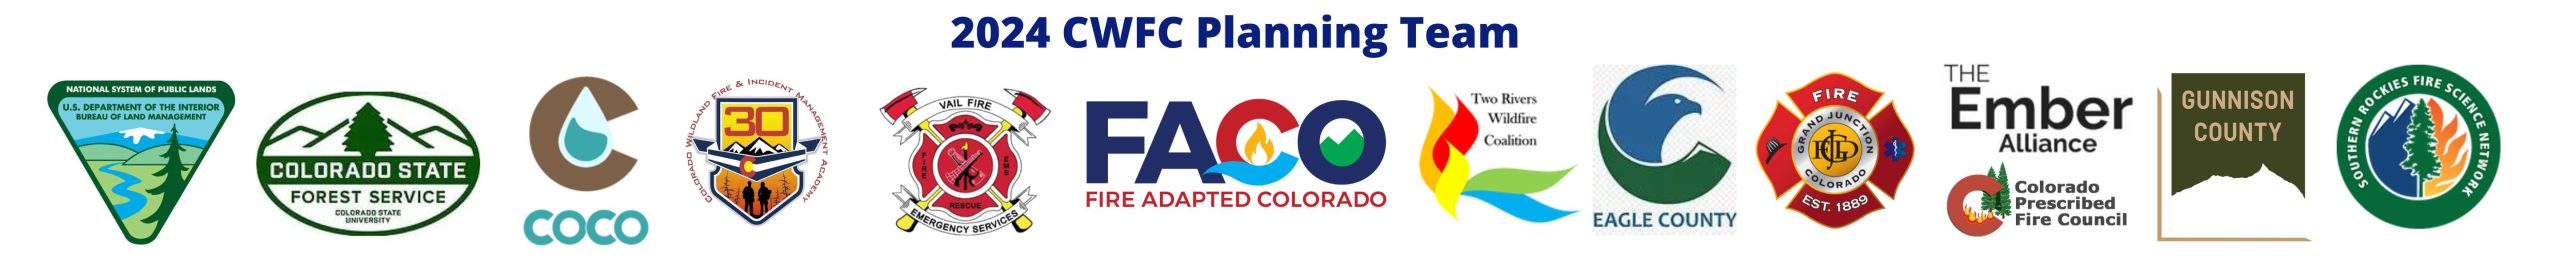 2024 CWFC planning team banner